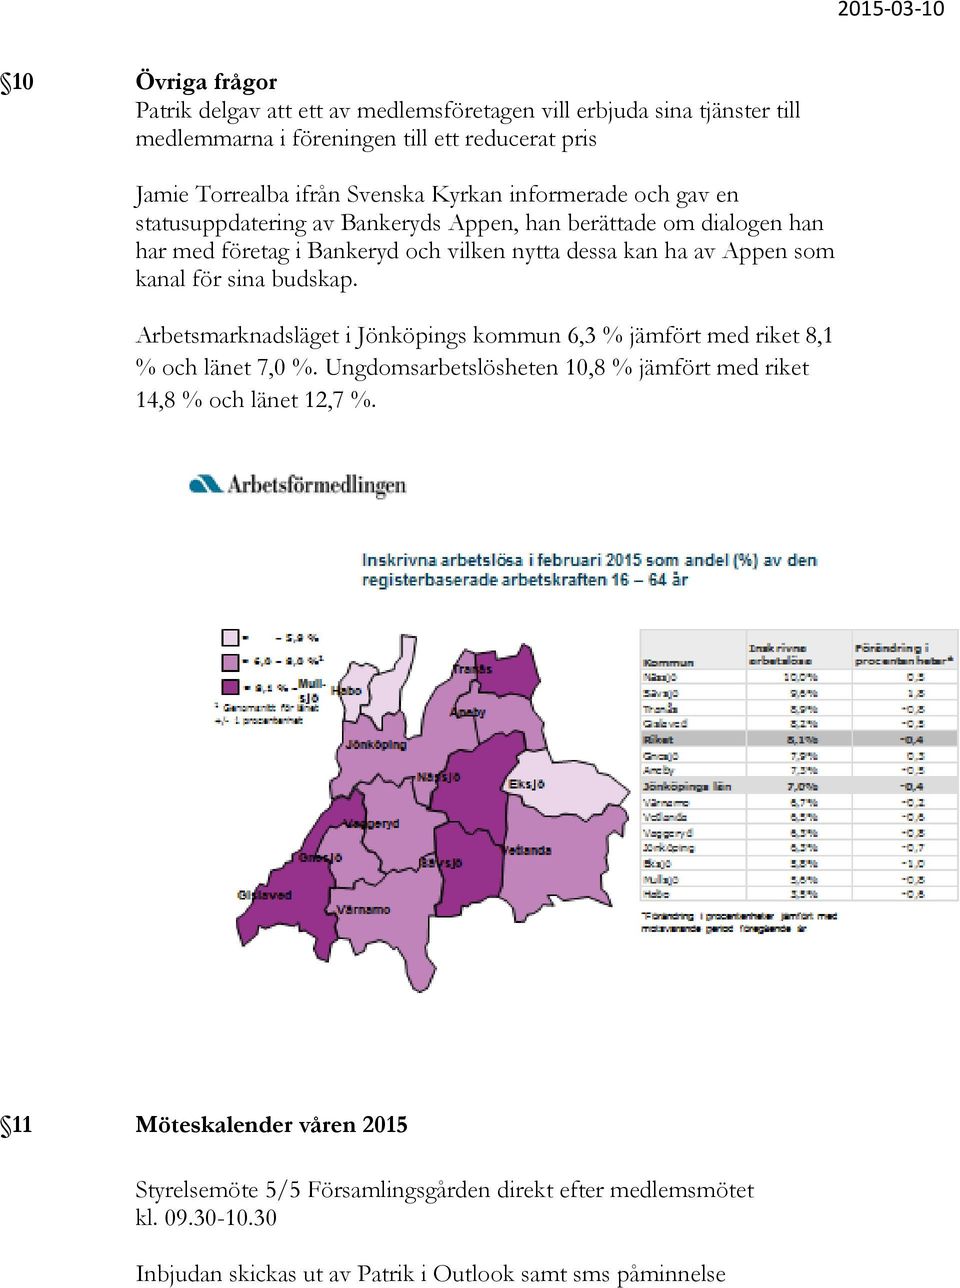 kanal för sina budskap. Arbetsmarknadsläget i Jönköpings kommun 6,3 % jämfört med riket 8,1 % och länet 7,0 %.